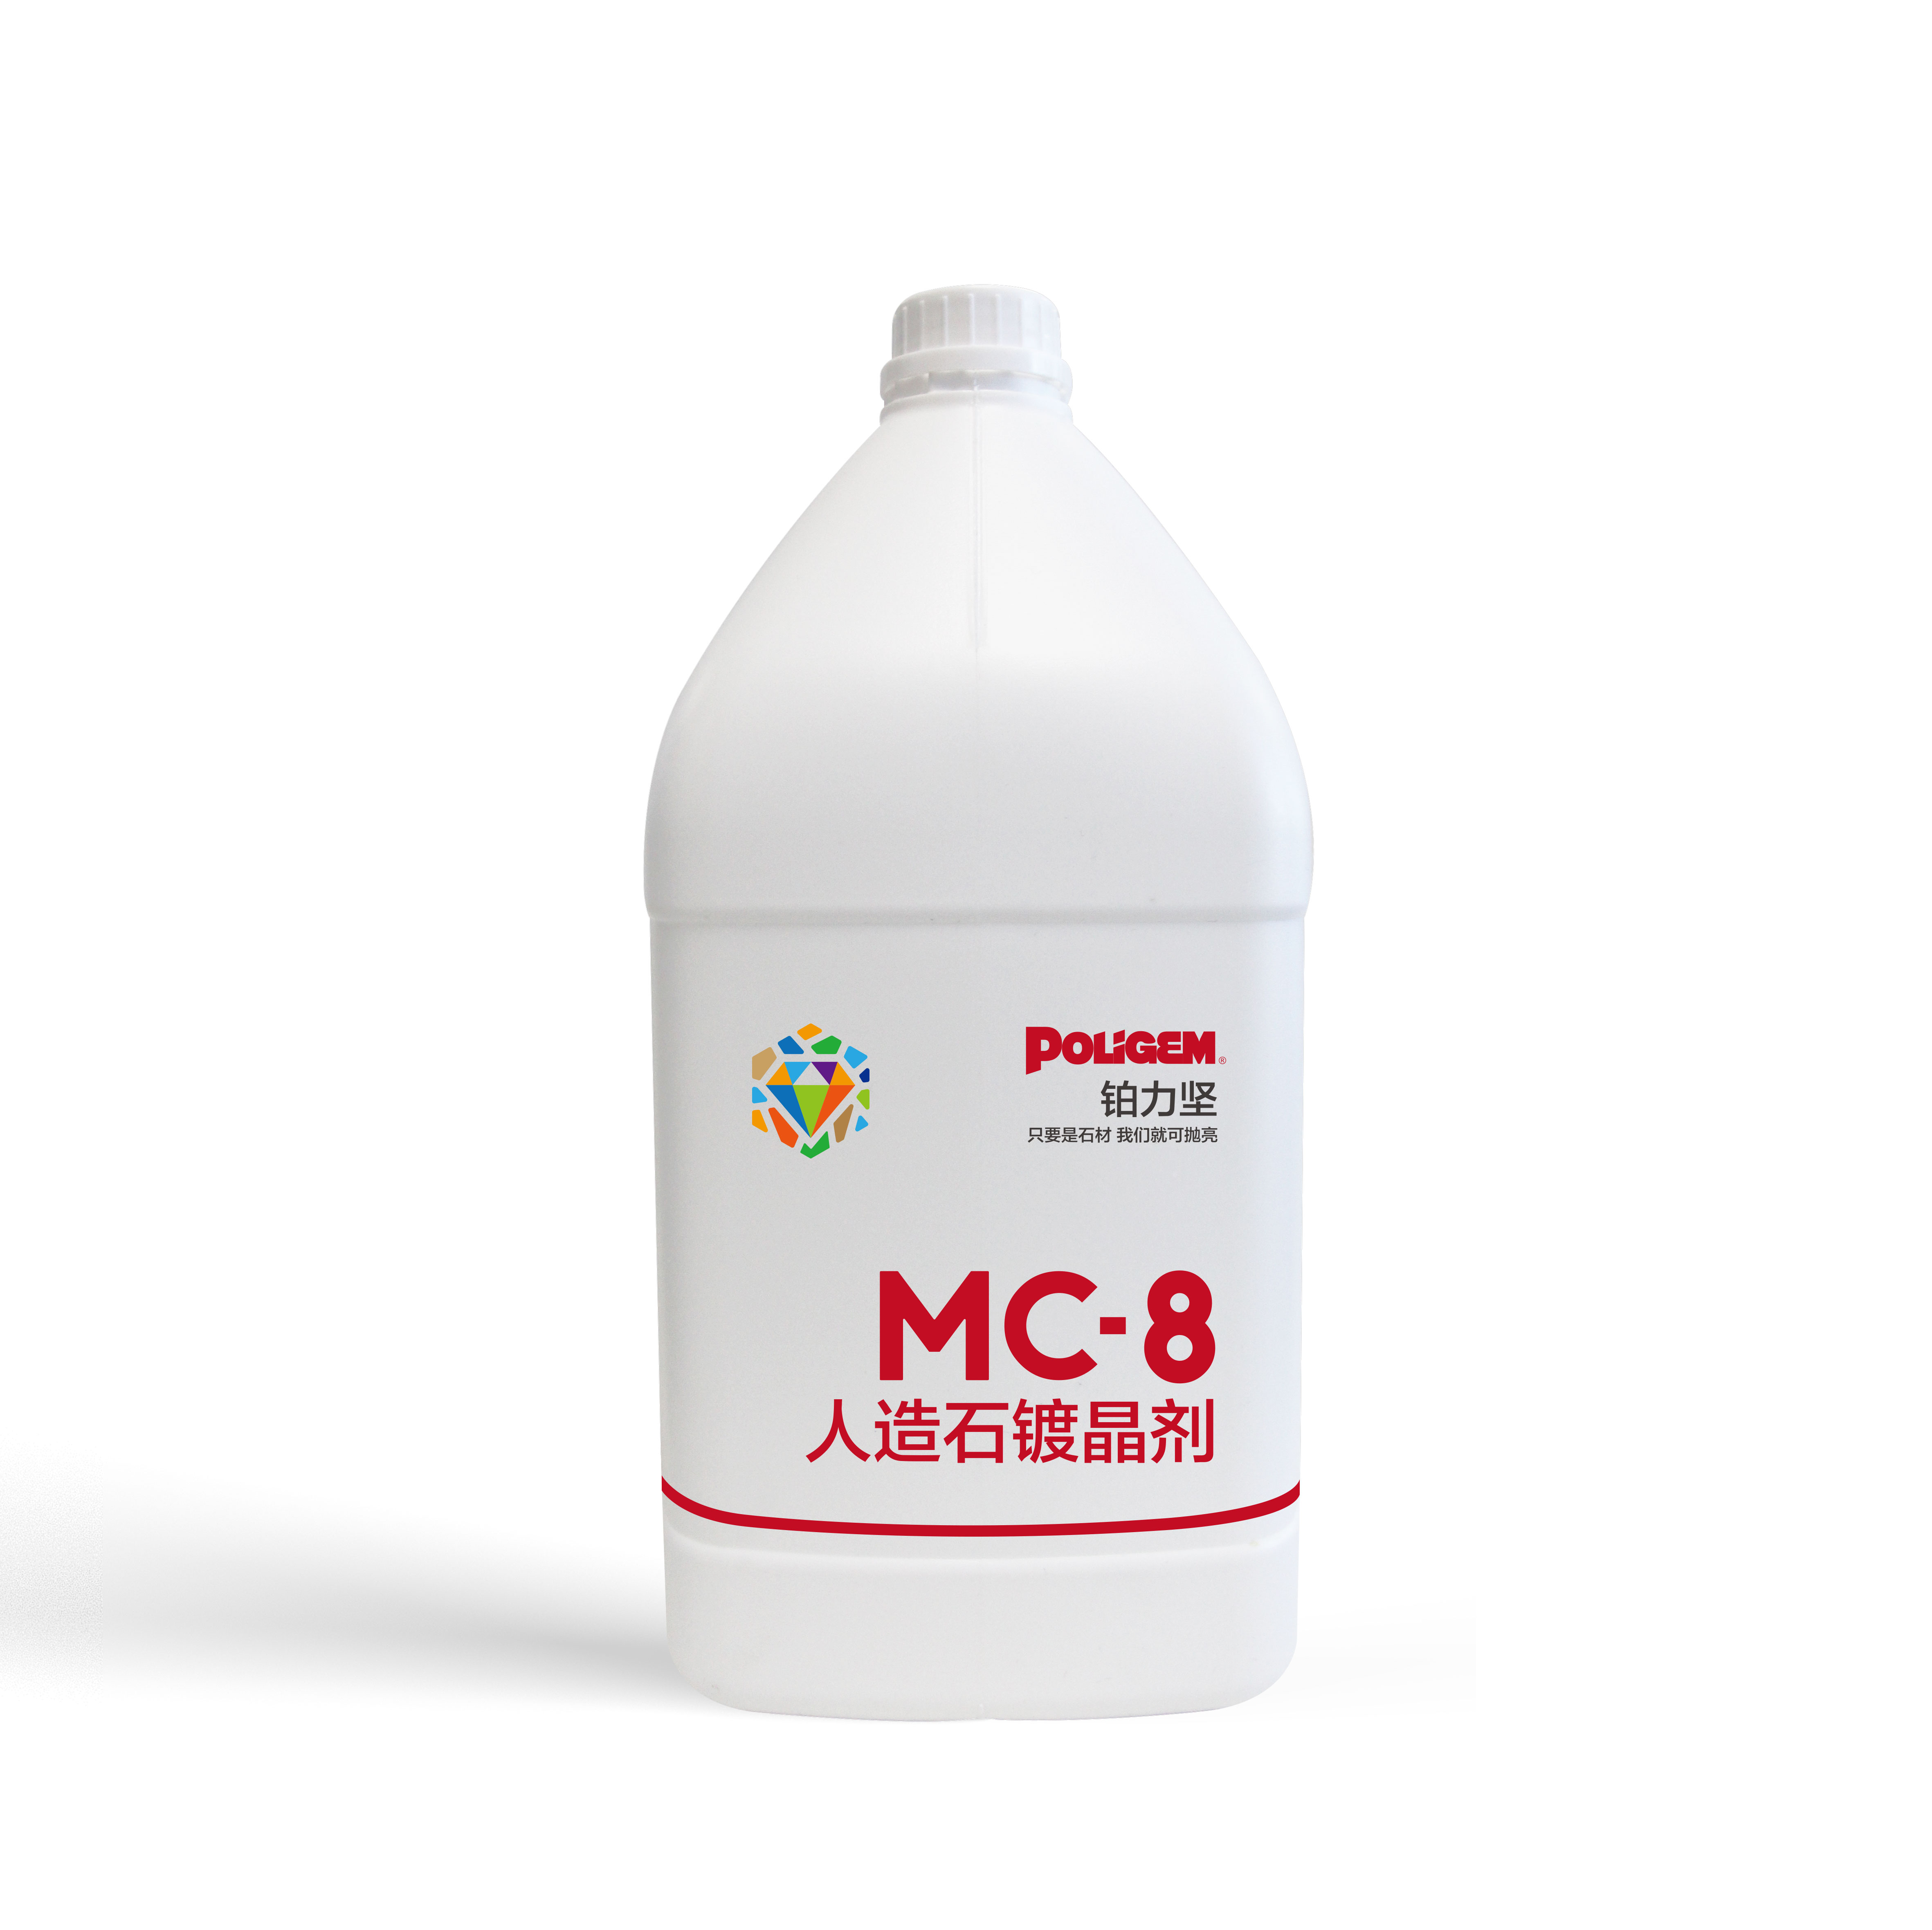 铂力坚MC-8人造石镀晶剂